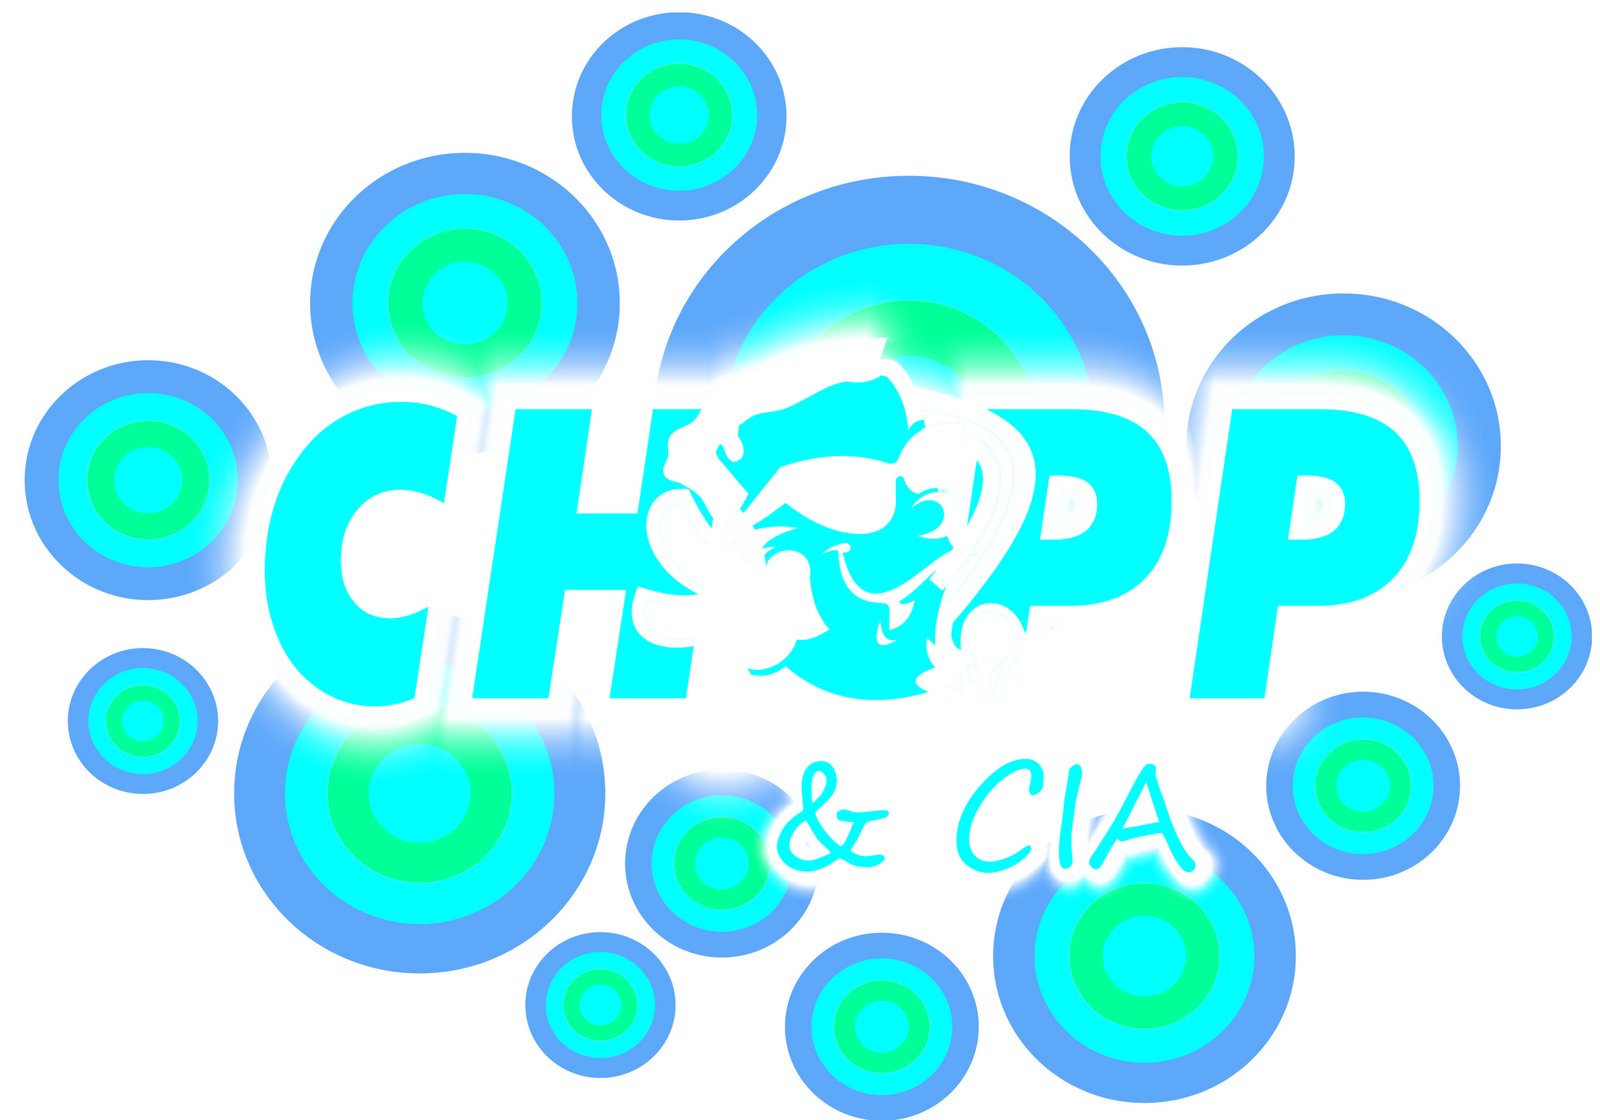 [chopp&cia_logo.jpg]